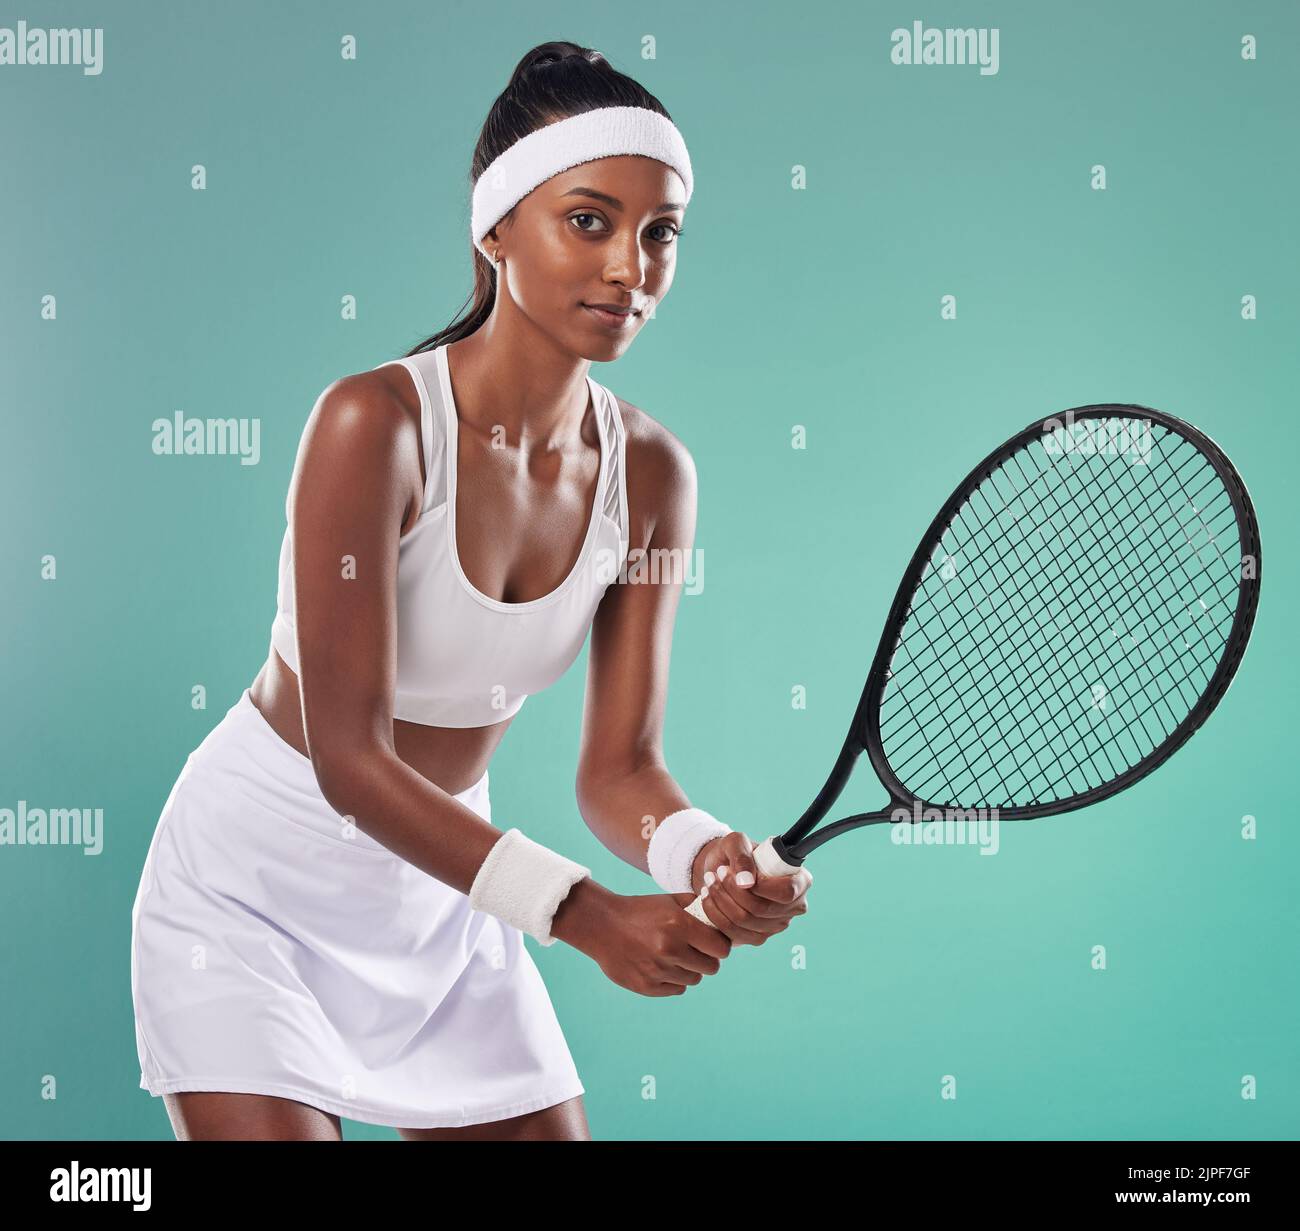 Sport donna, tennis e ritratto di atleta che gioca una partita in campo. Persona attiva, in forma e motivata che indossa abbigliamento sportivo professionale. Femmina Foto Stock